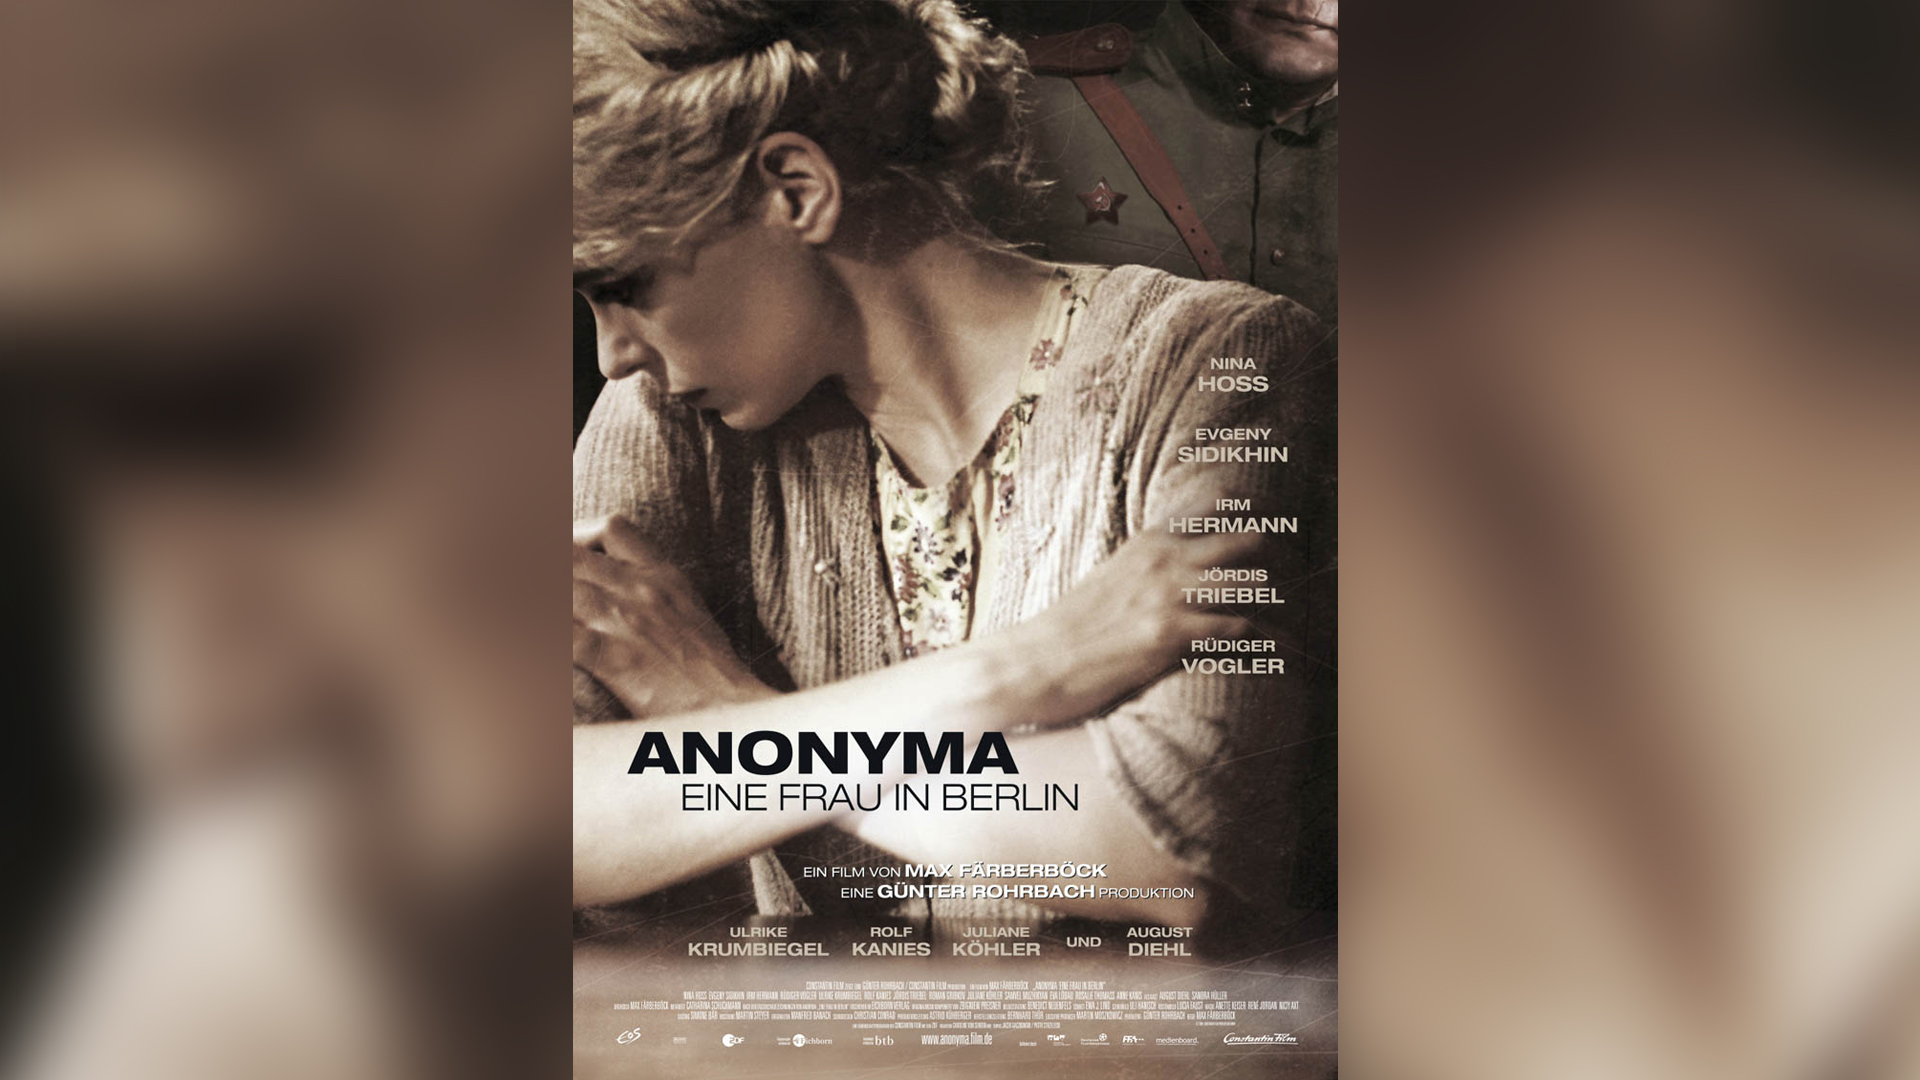 01 ANONYMA - EINE FRAU IN BERLIN (A Woman in Berlin)